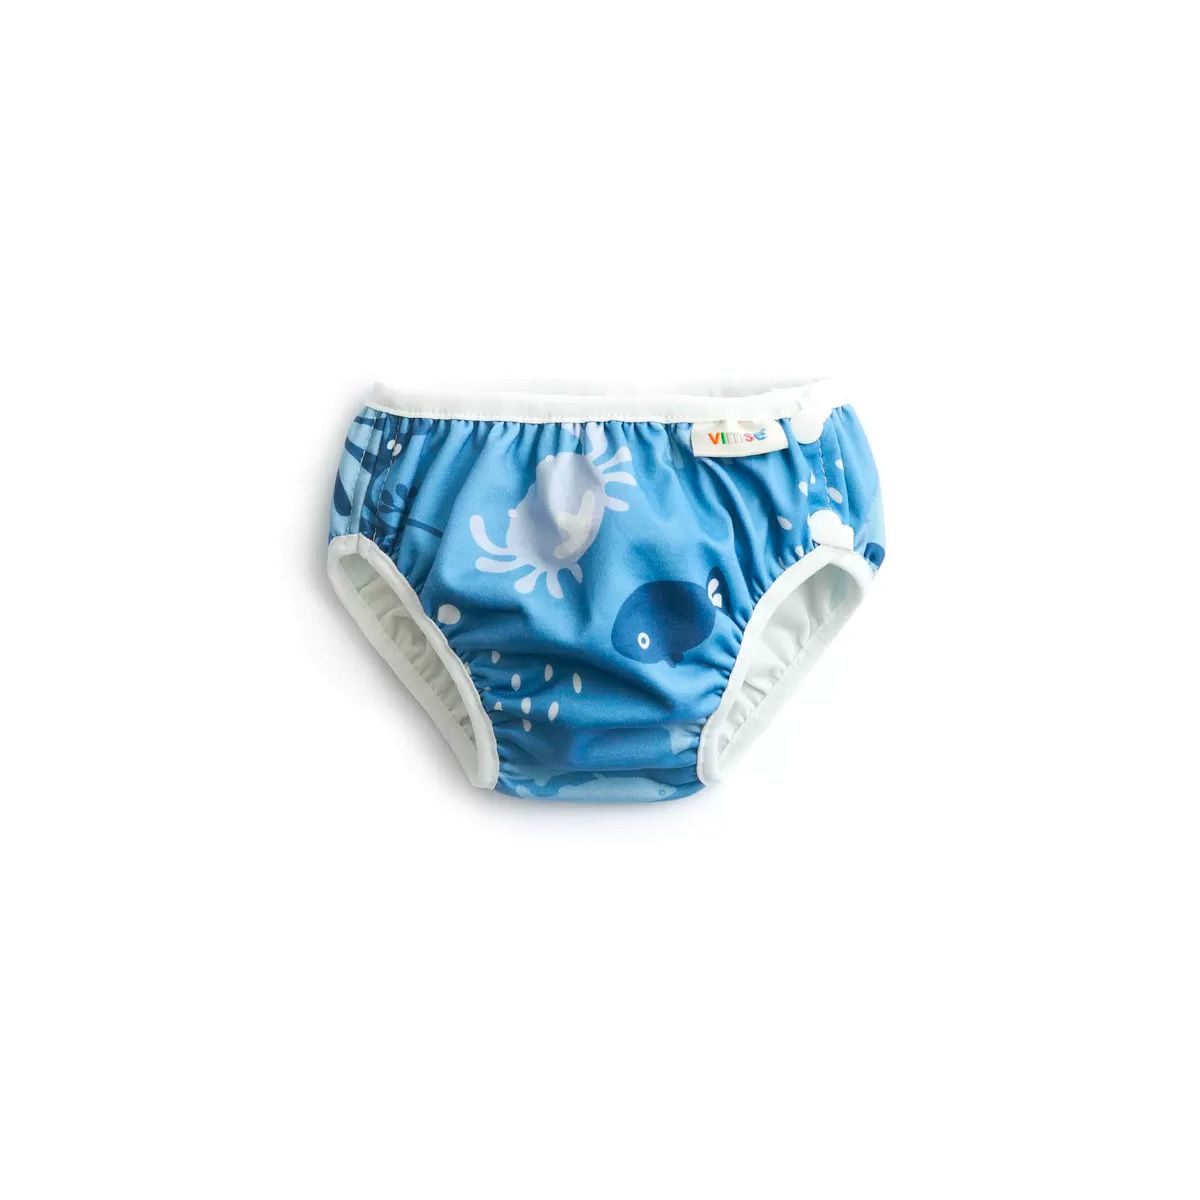 Vimse Swim Diaper Blue - Flere | Med24.dk